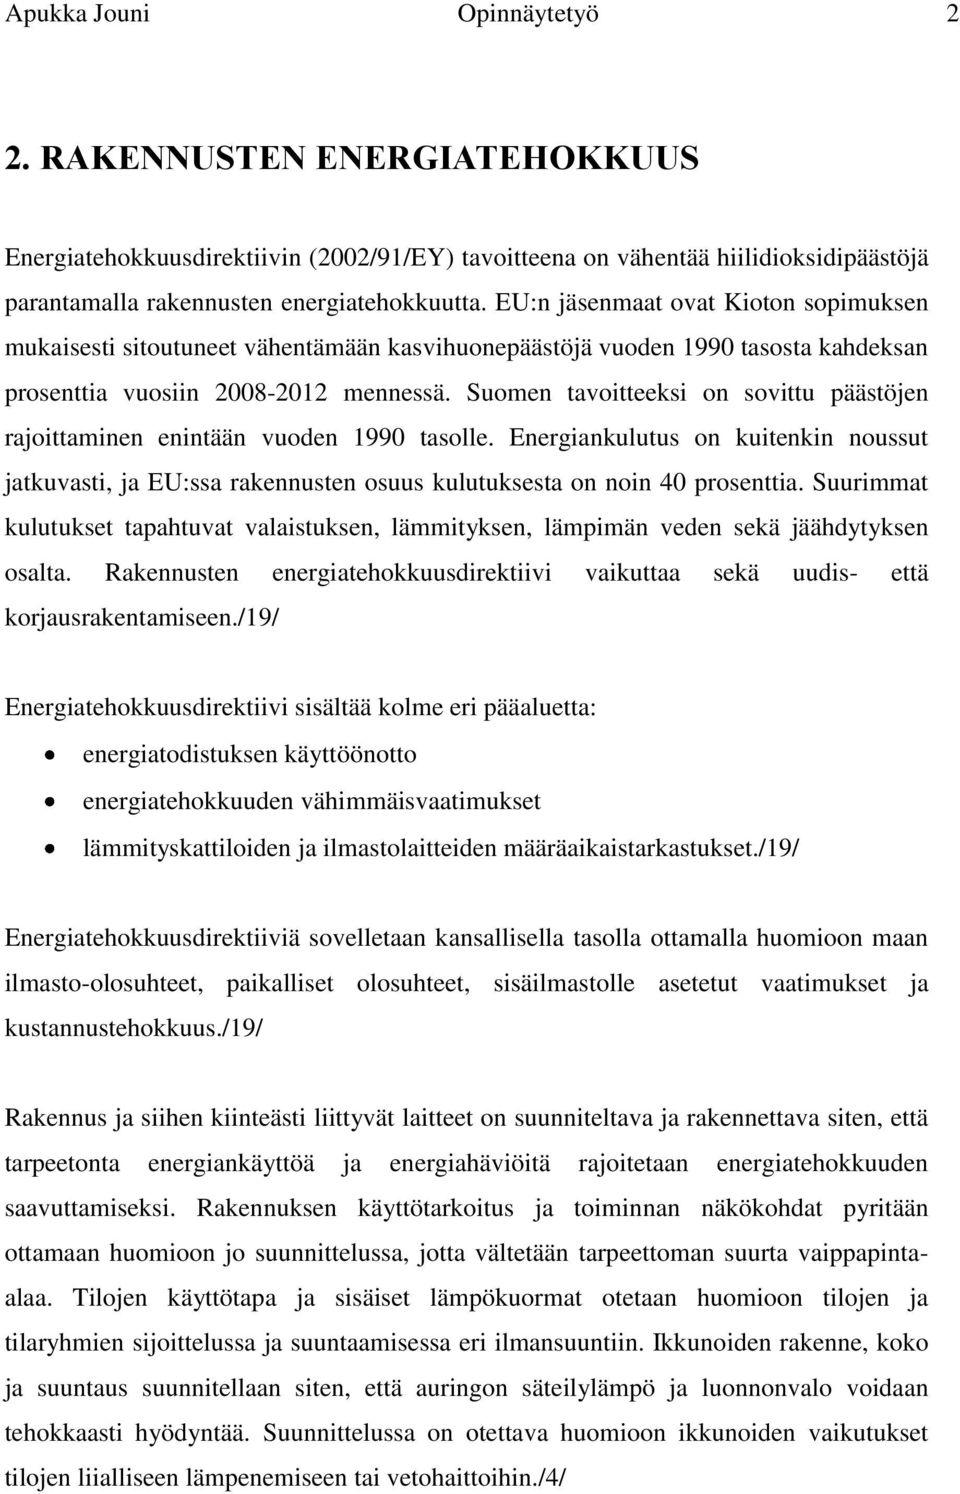 KEMI-TORNION AMMATTIKORKEAKOULU - PDF Free Download